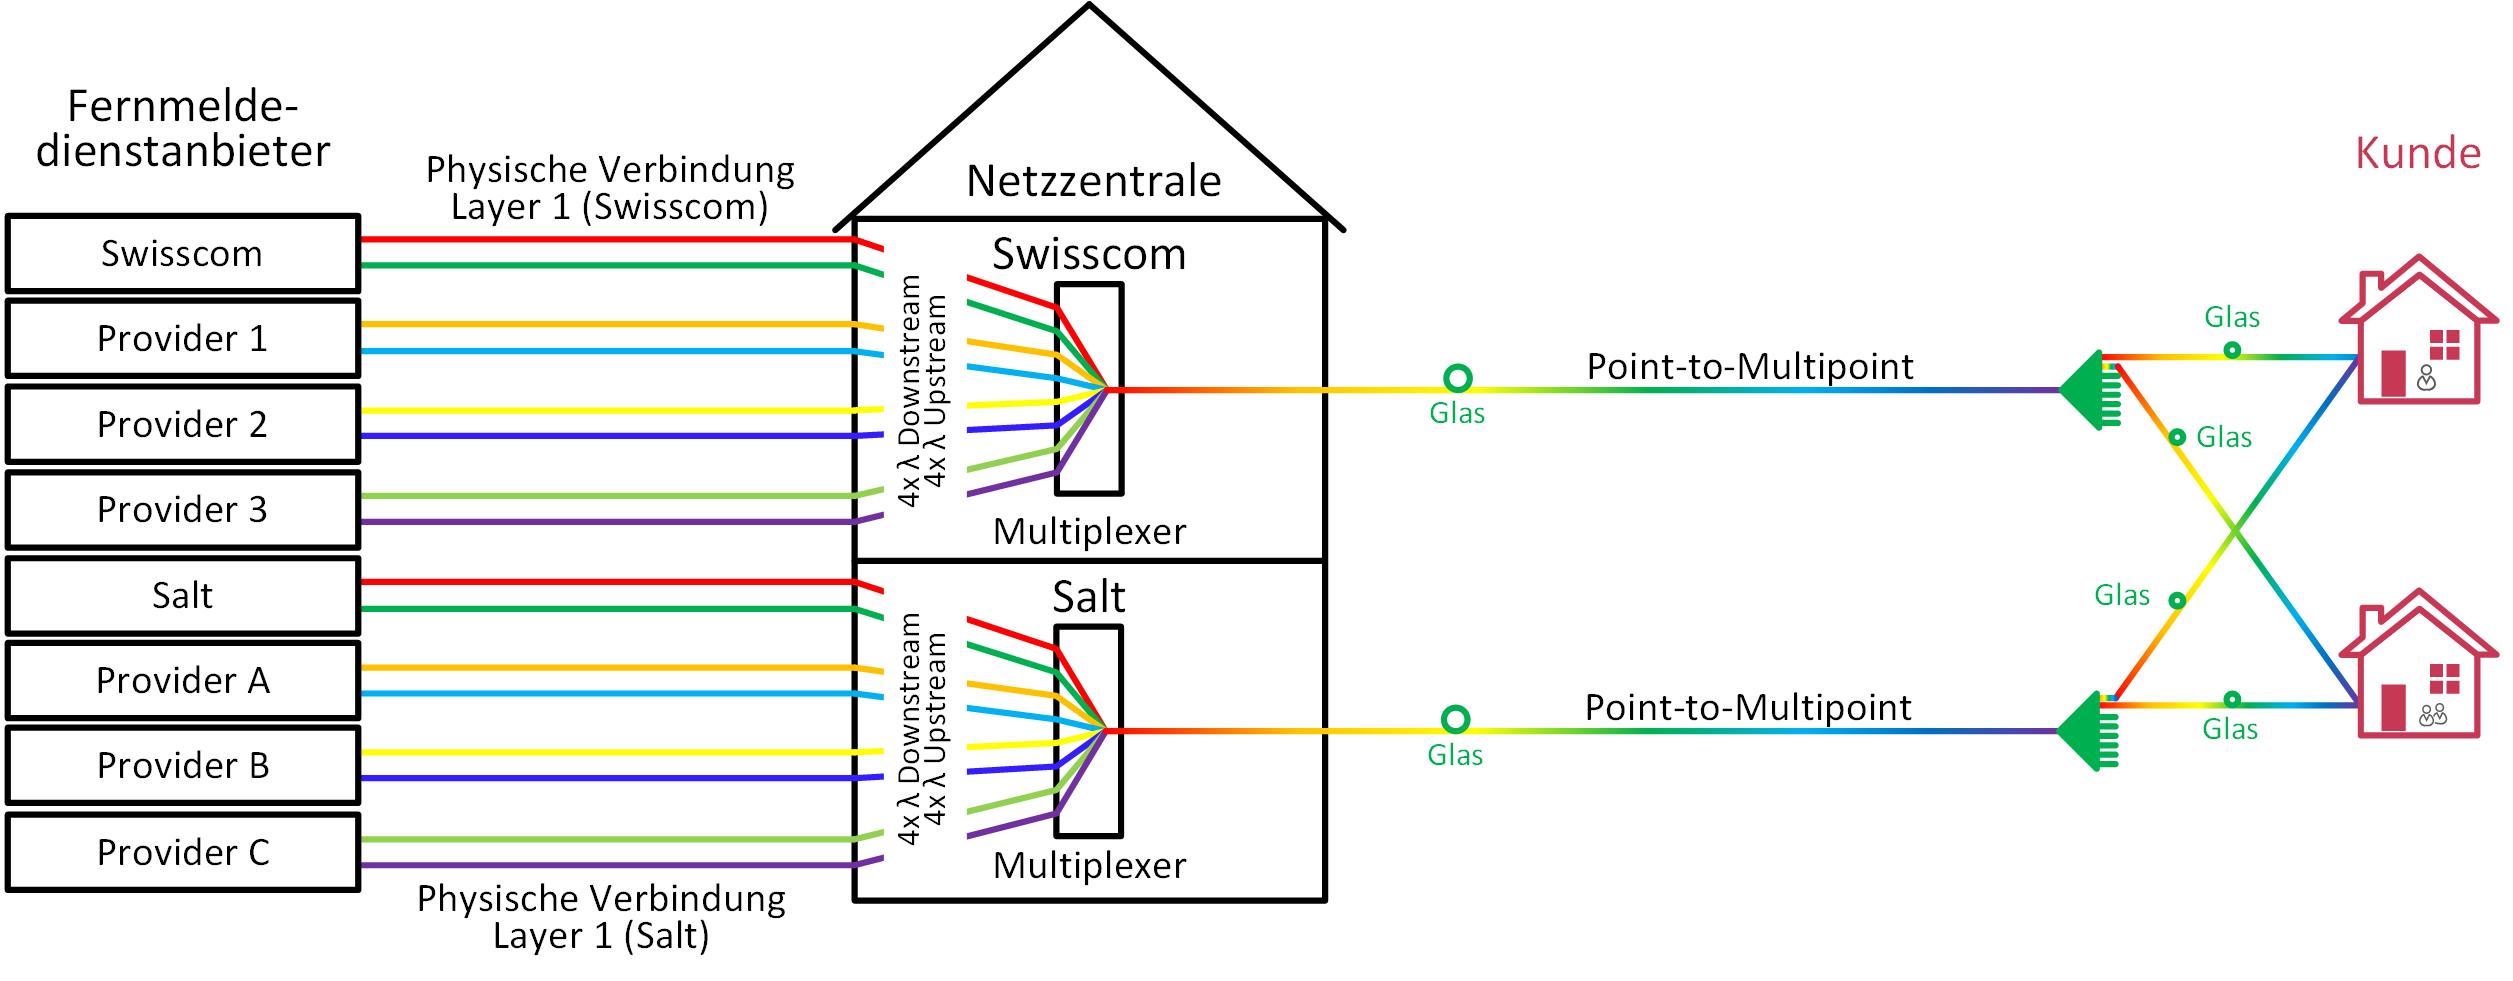 Layer-3-Zugang über Point-to-MultipointFTTH-Netze von Swisscom oder Salt mittels Wellenlängenmultiplexing (C-ALO)